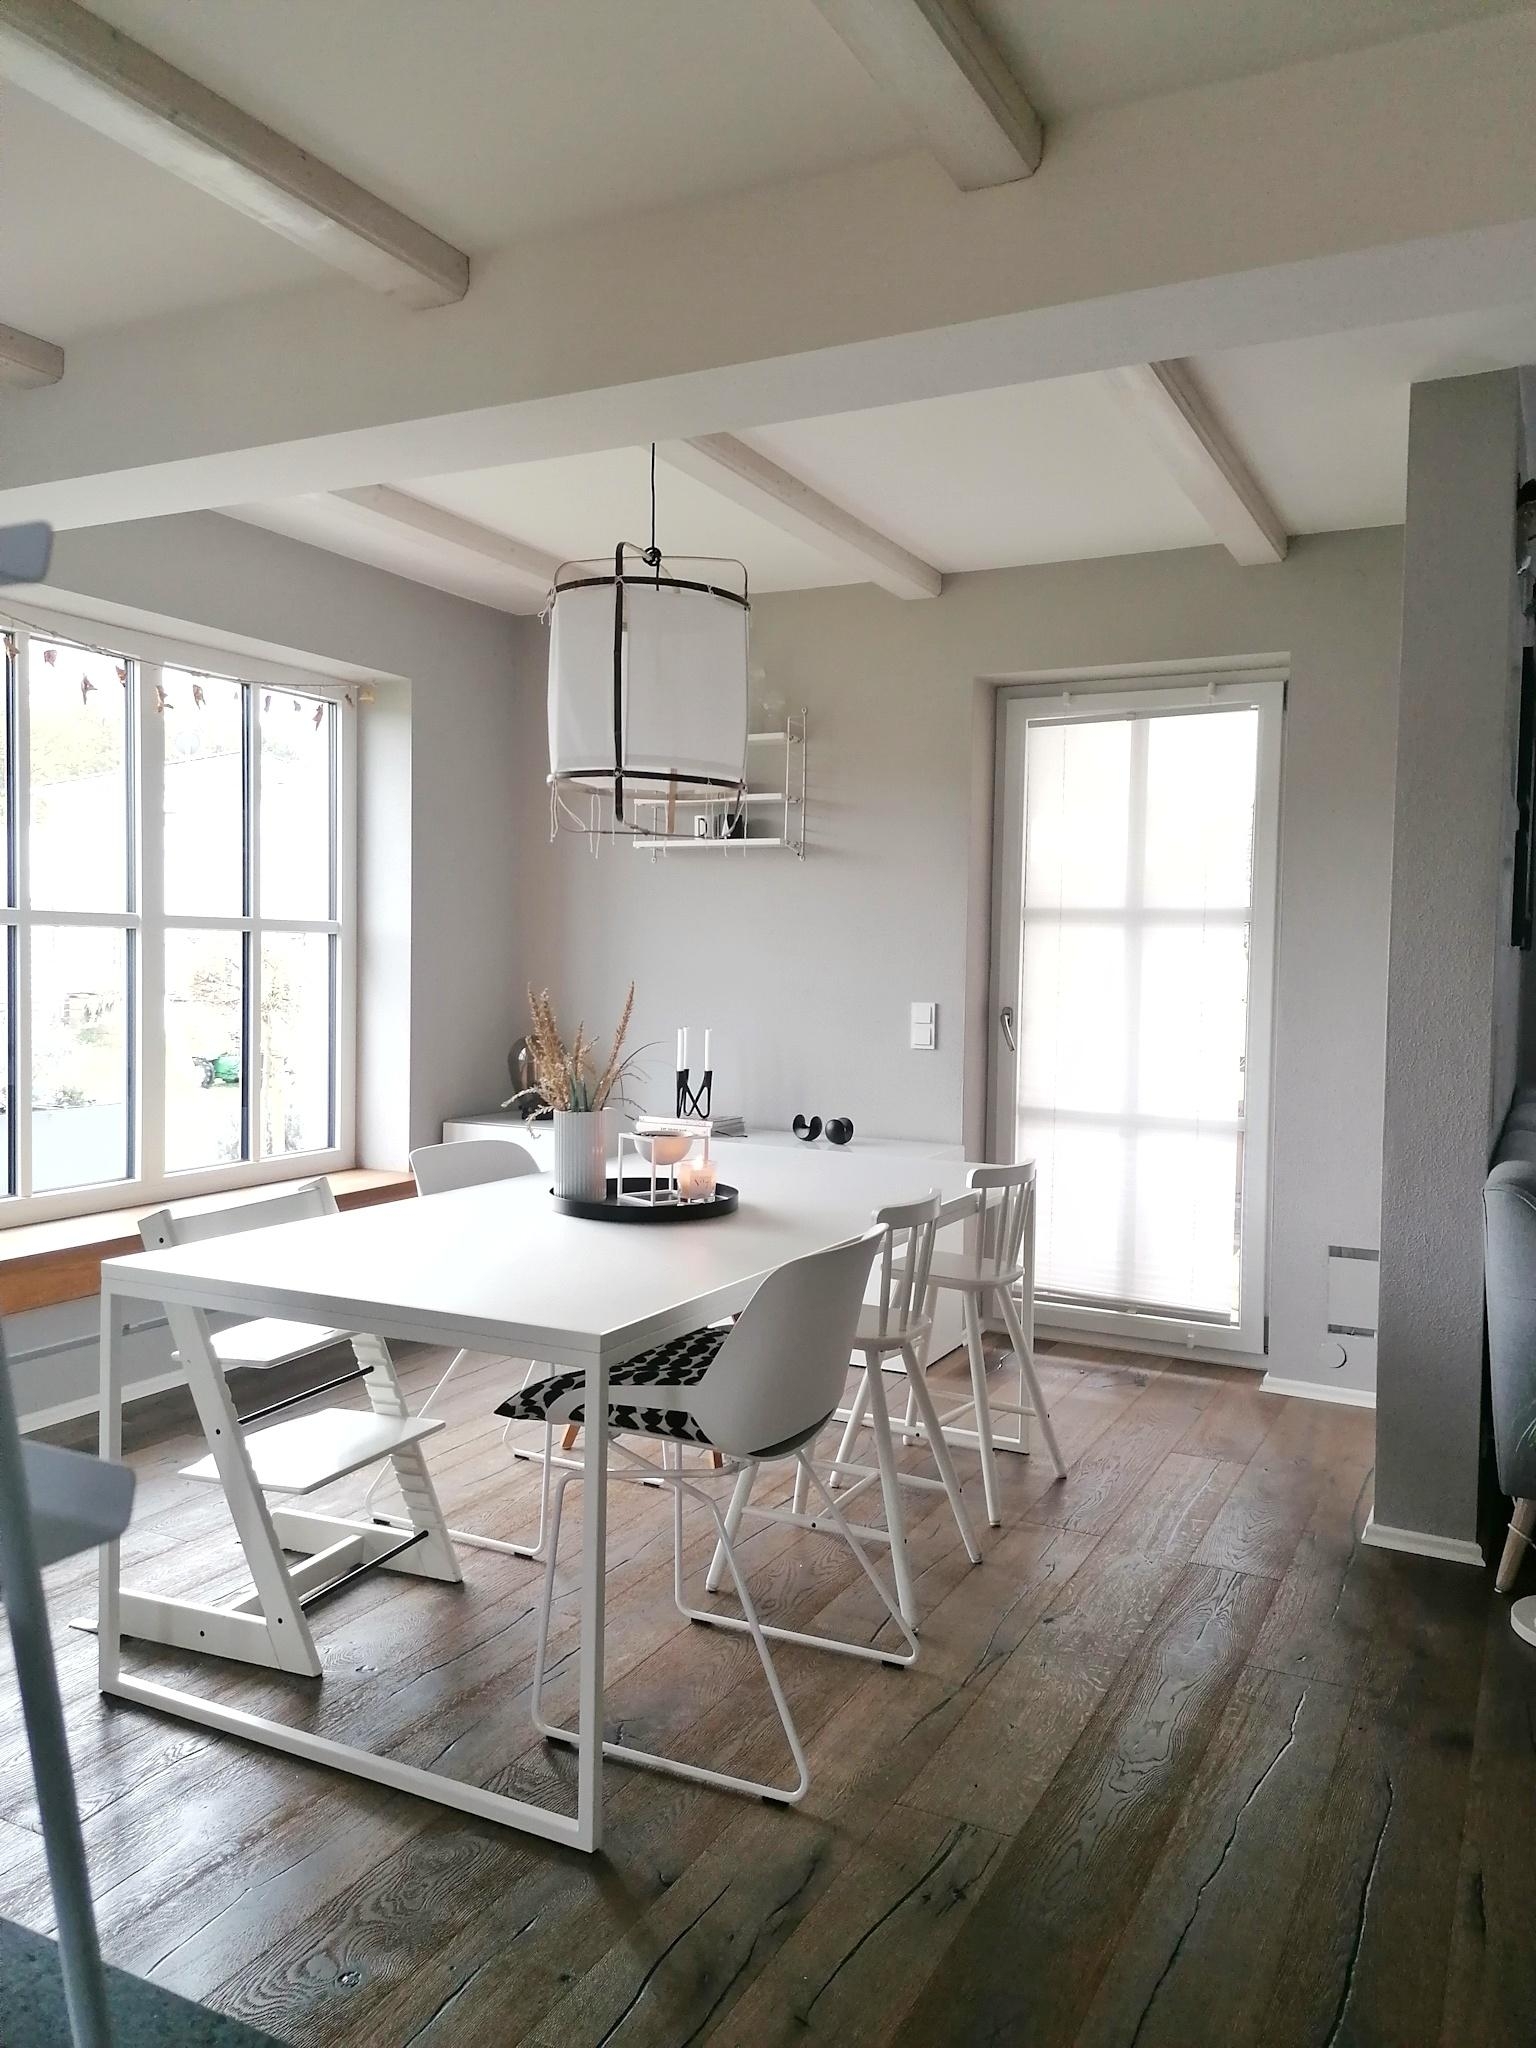 #esszimmer #livingroom #interiordesign #interior124 #skandinavischwohnen #nordicinspiration #nordicliving #couchmagazin 